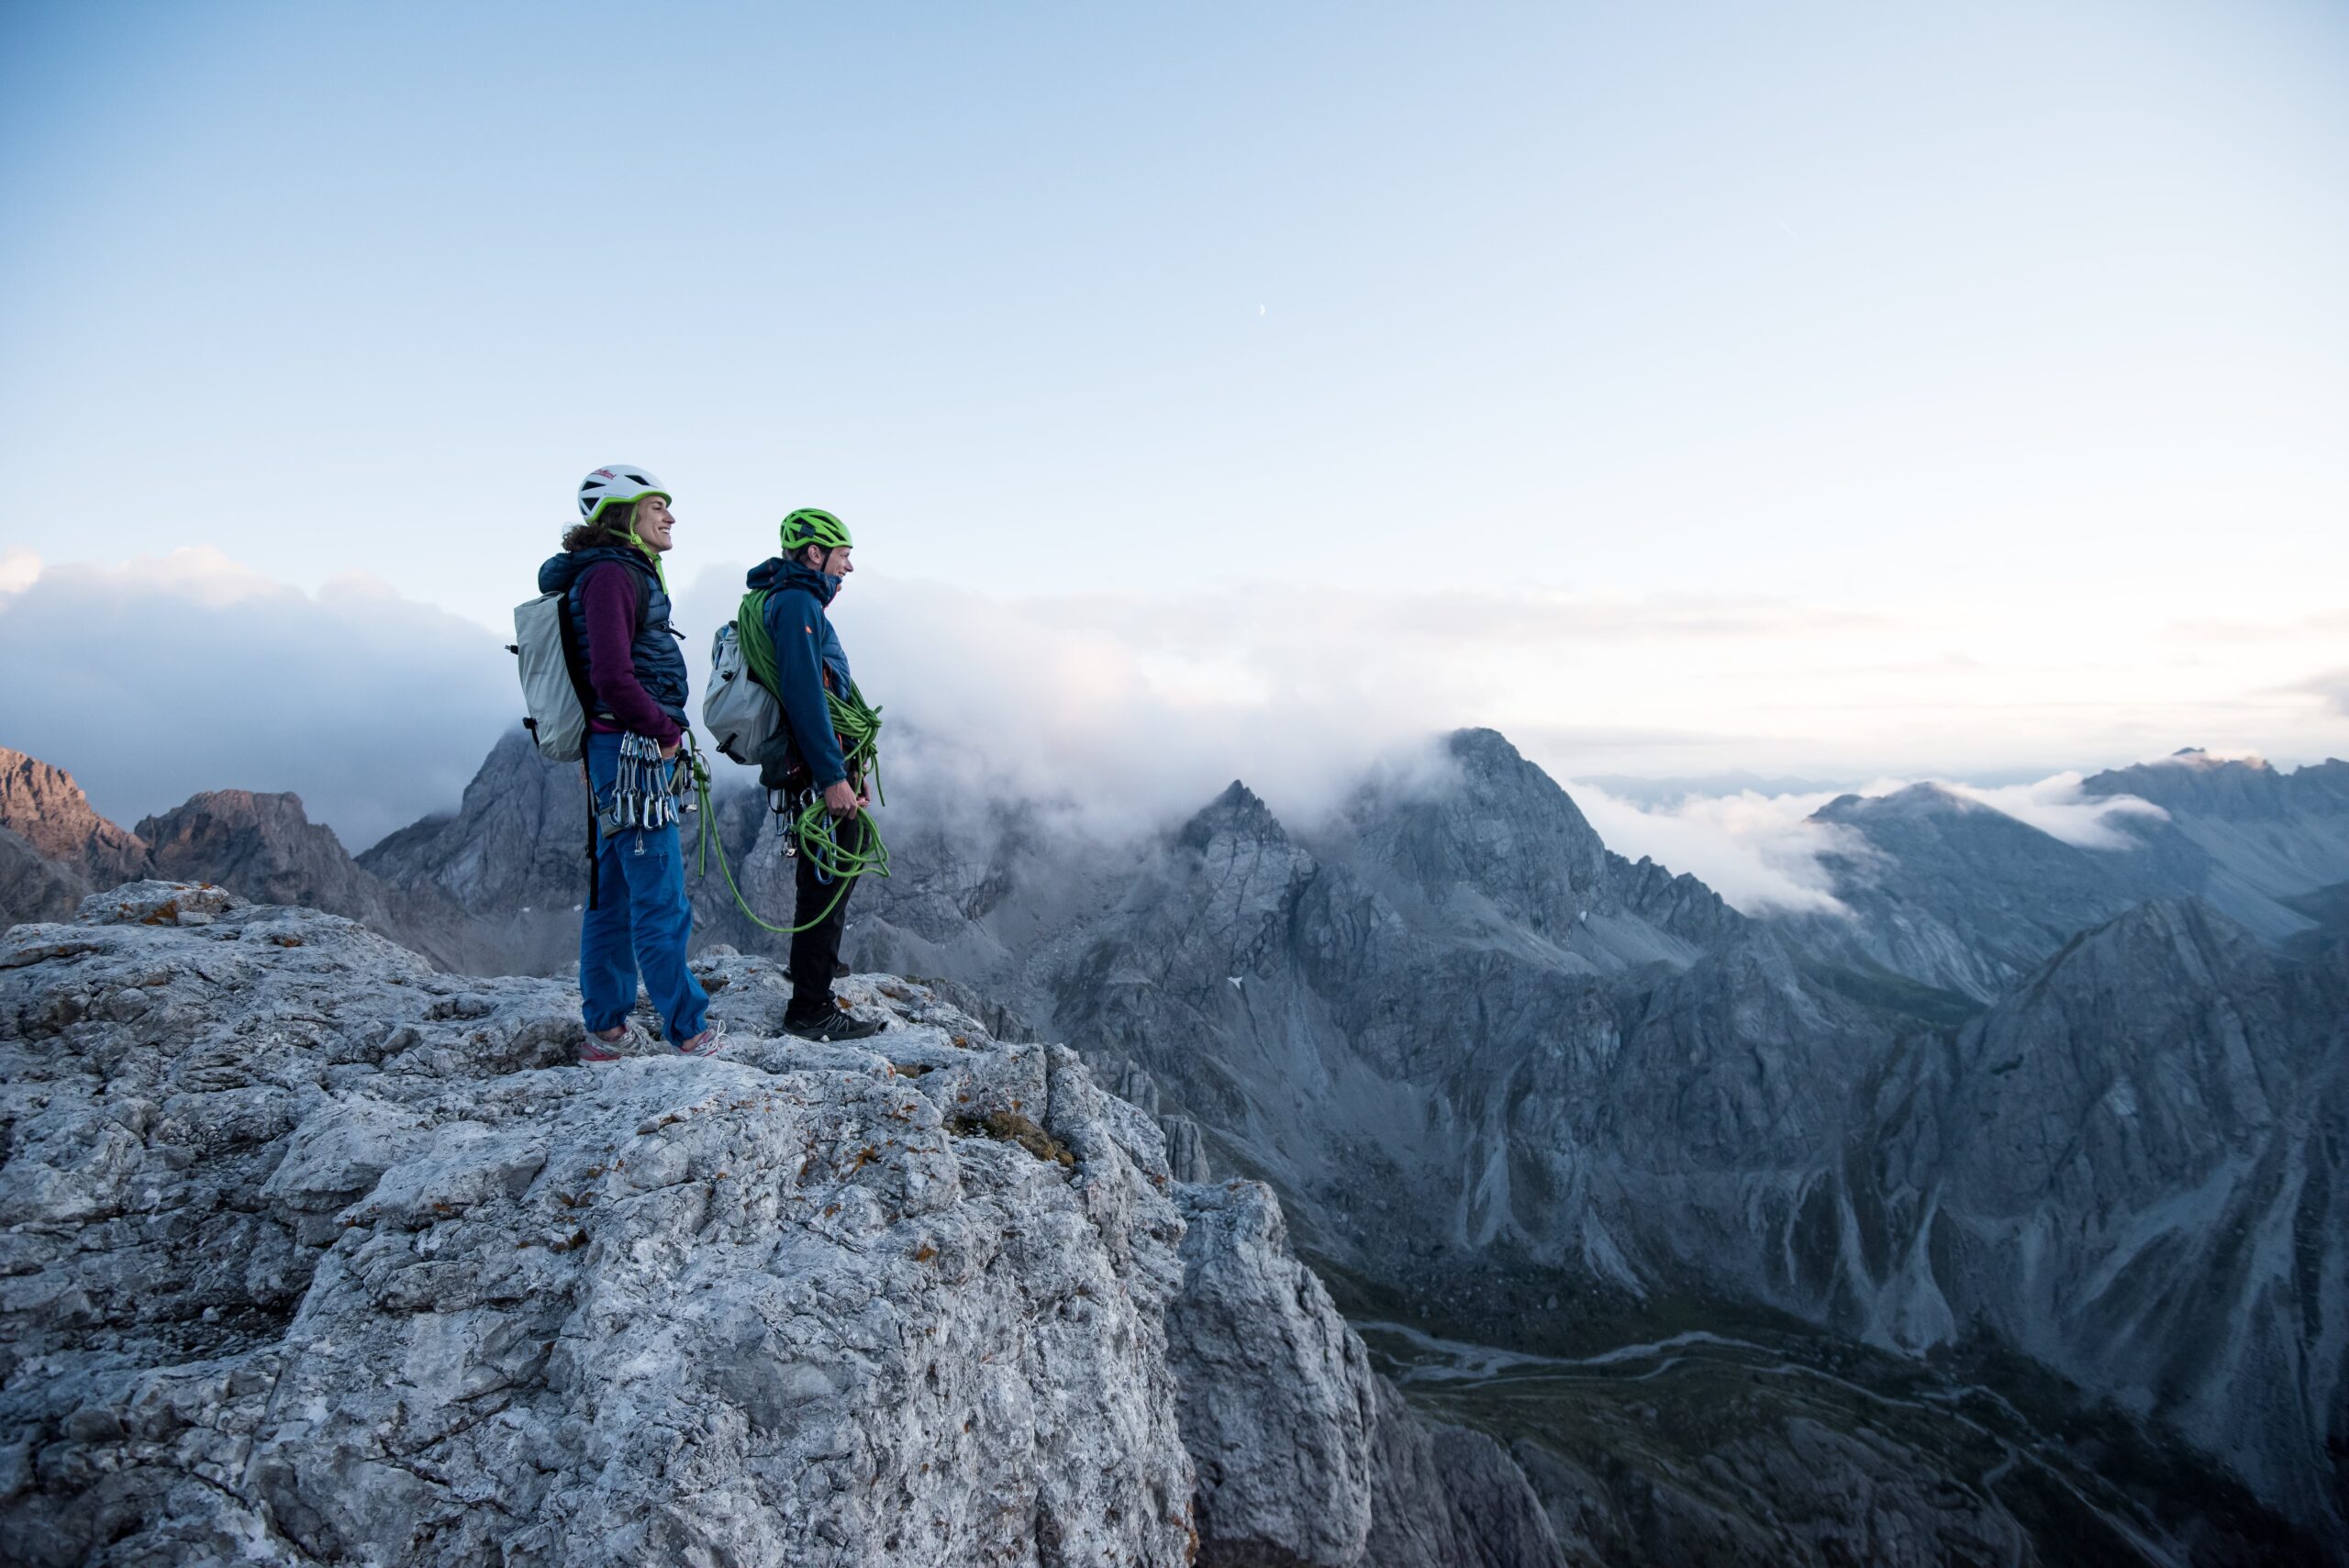 Klettern ist eine in den Lienzer Dolomiten häufig ausgeführte Sportart. Die Klettersteige bieten tolles Panorama.